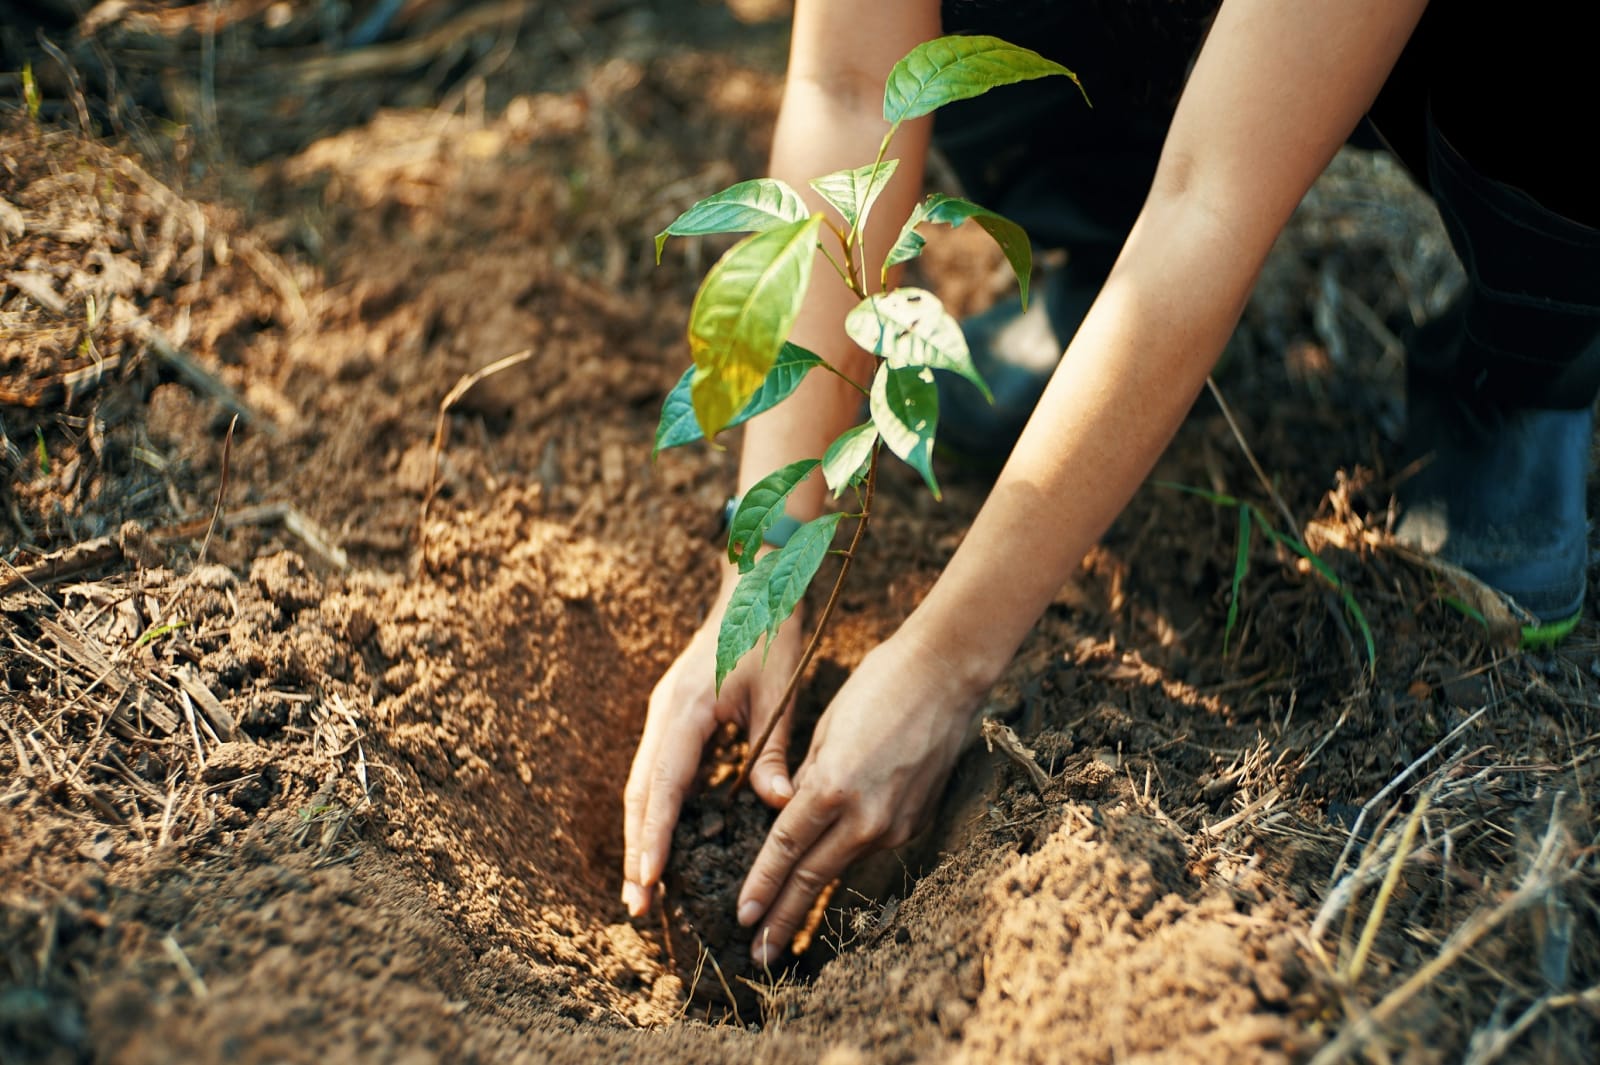 Hands planting saplings in fresh dirt